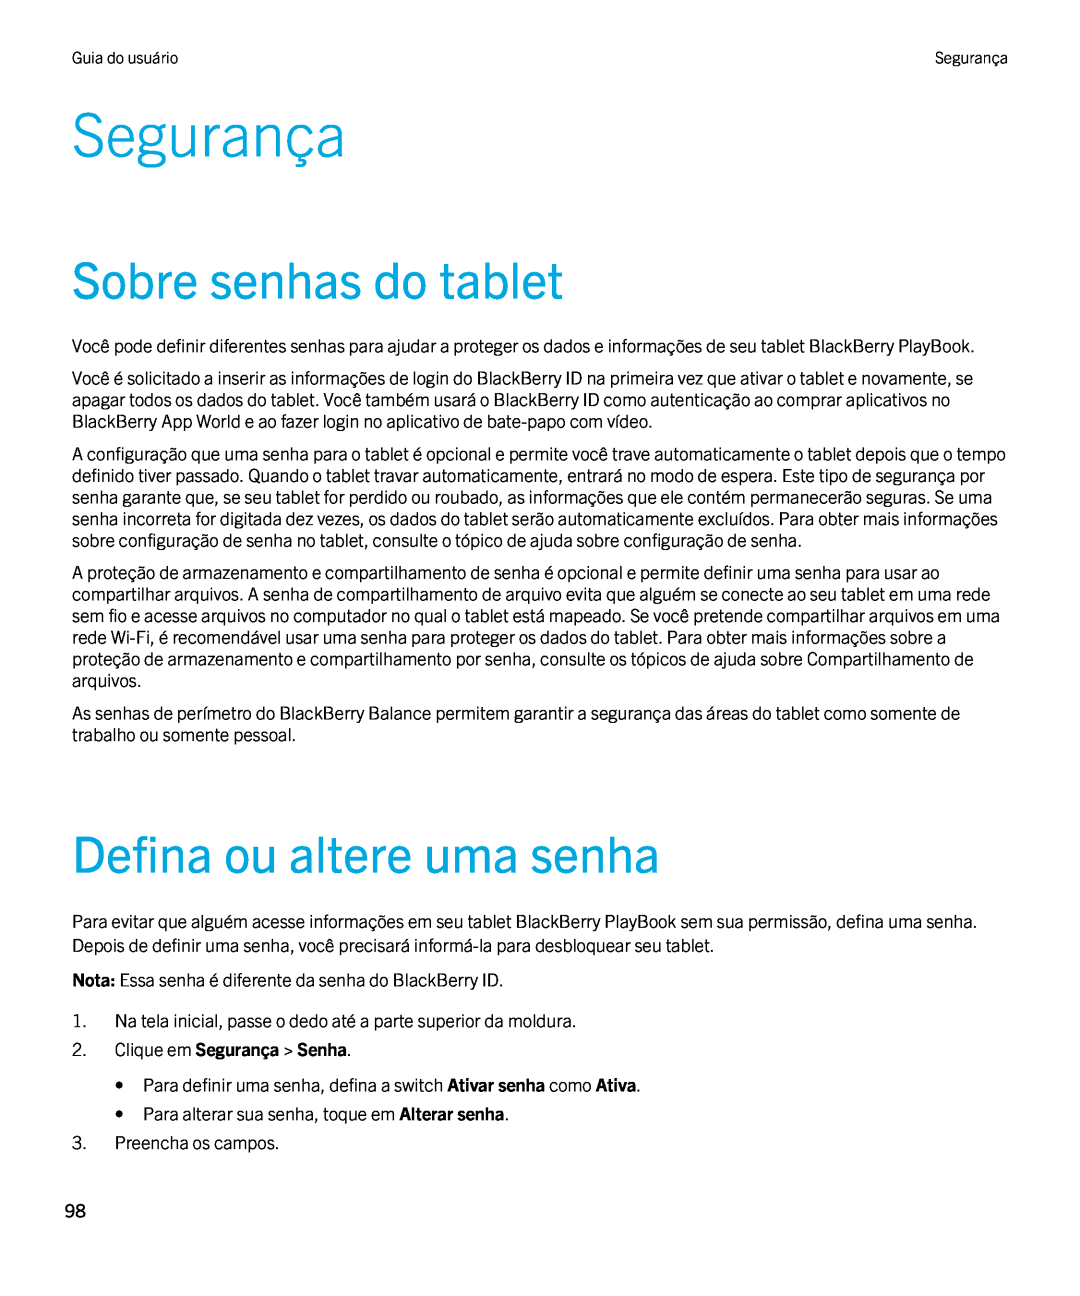 Blackberry 2.0.1 manual Sobre senhas do tablet, Defina ou altere uma senha, Clique em Segurança Senha 